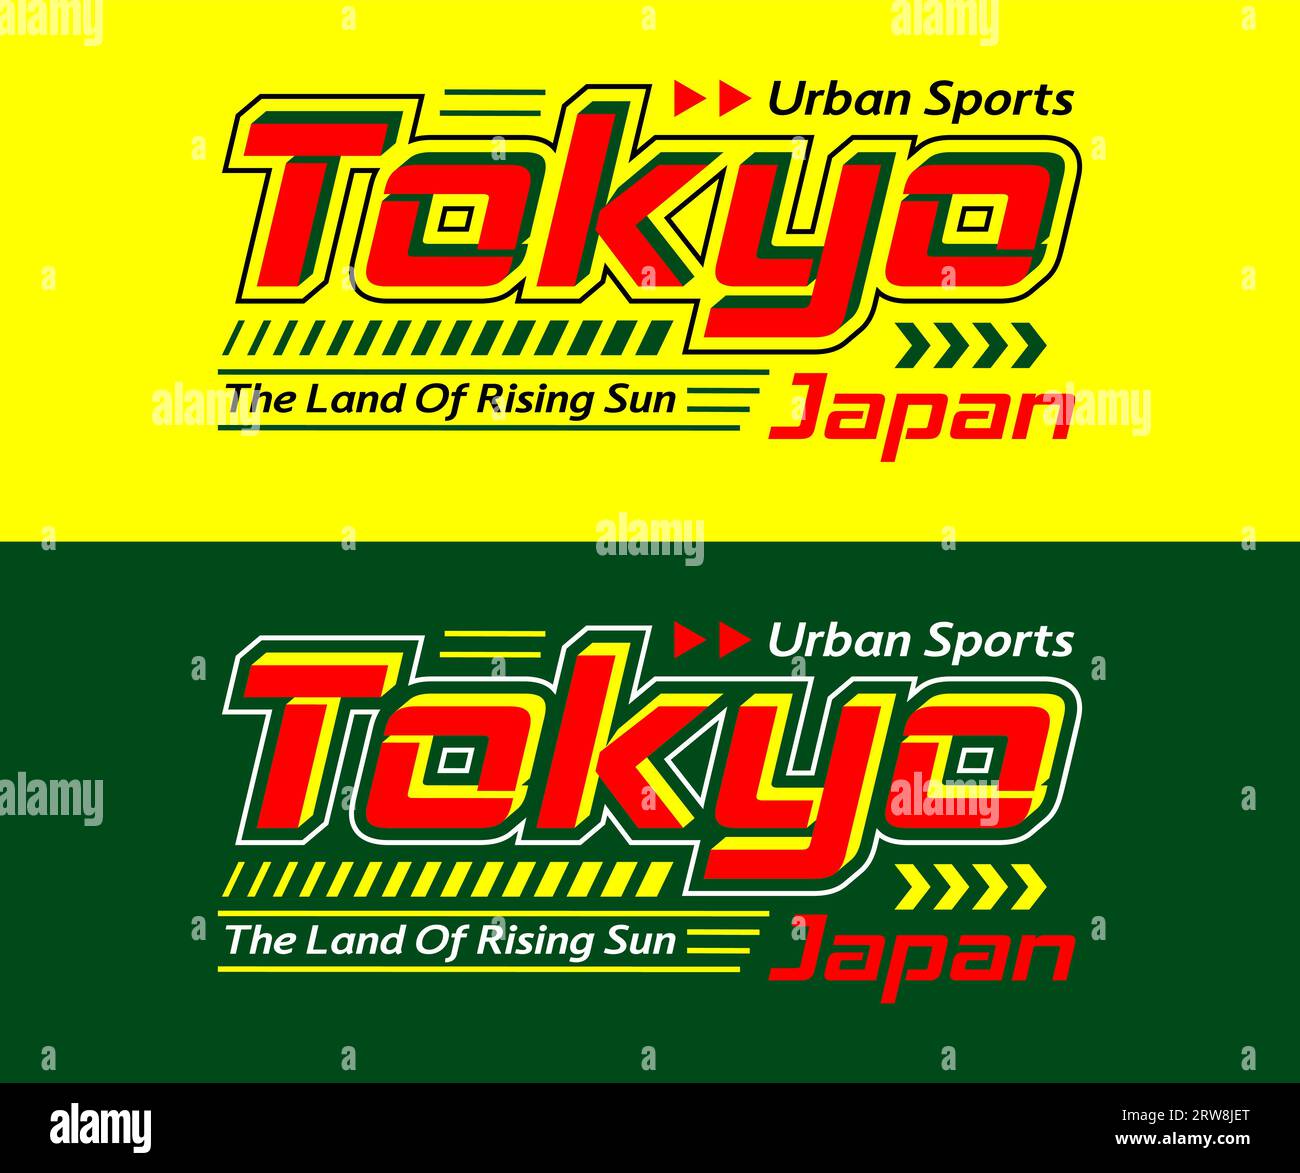 Police de caractères de course de Tokyo, typographie graphique pour t-shirt, affiches, étiquettes, etc Illustration de Vecteur